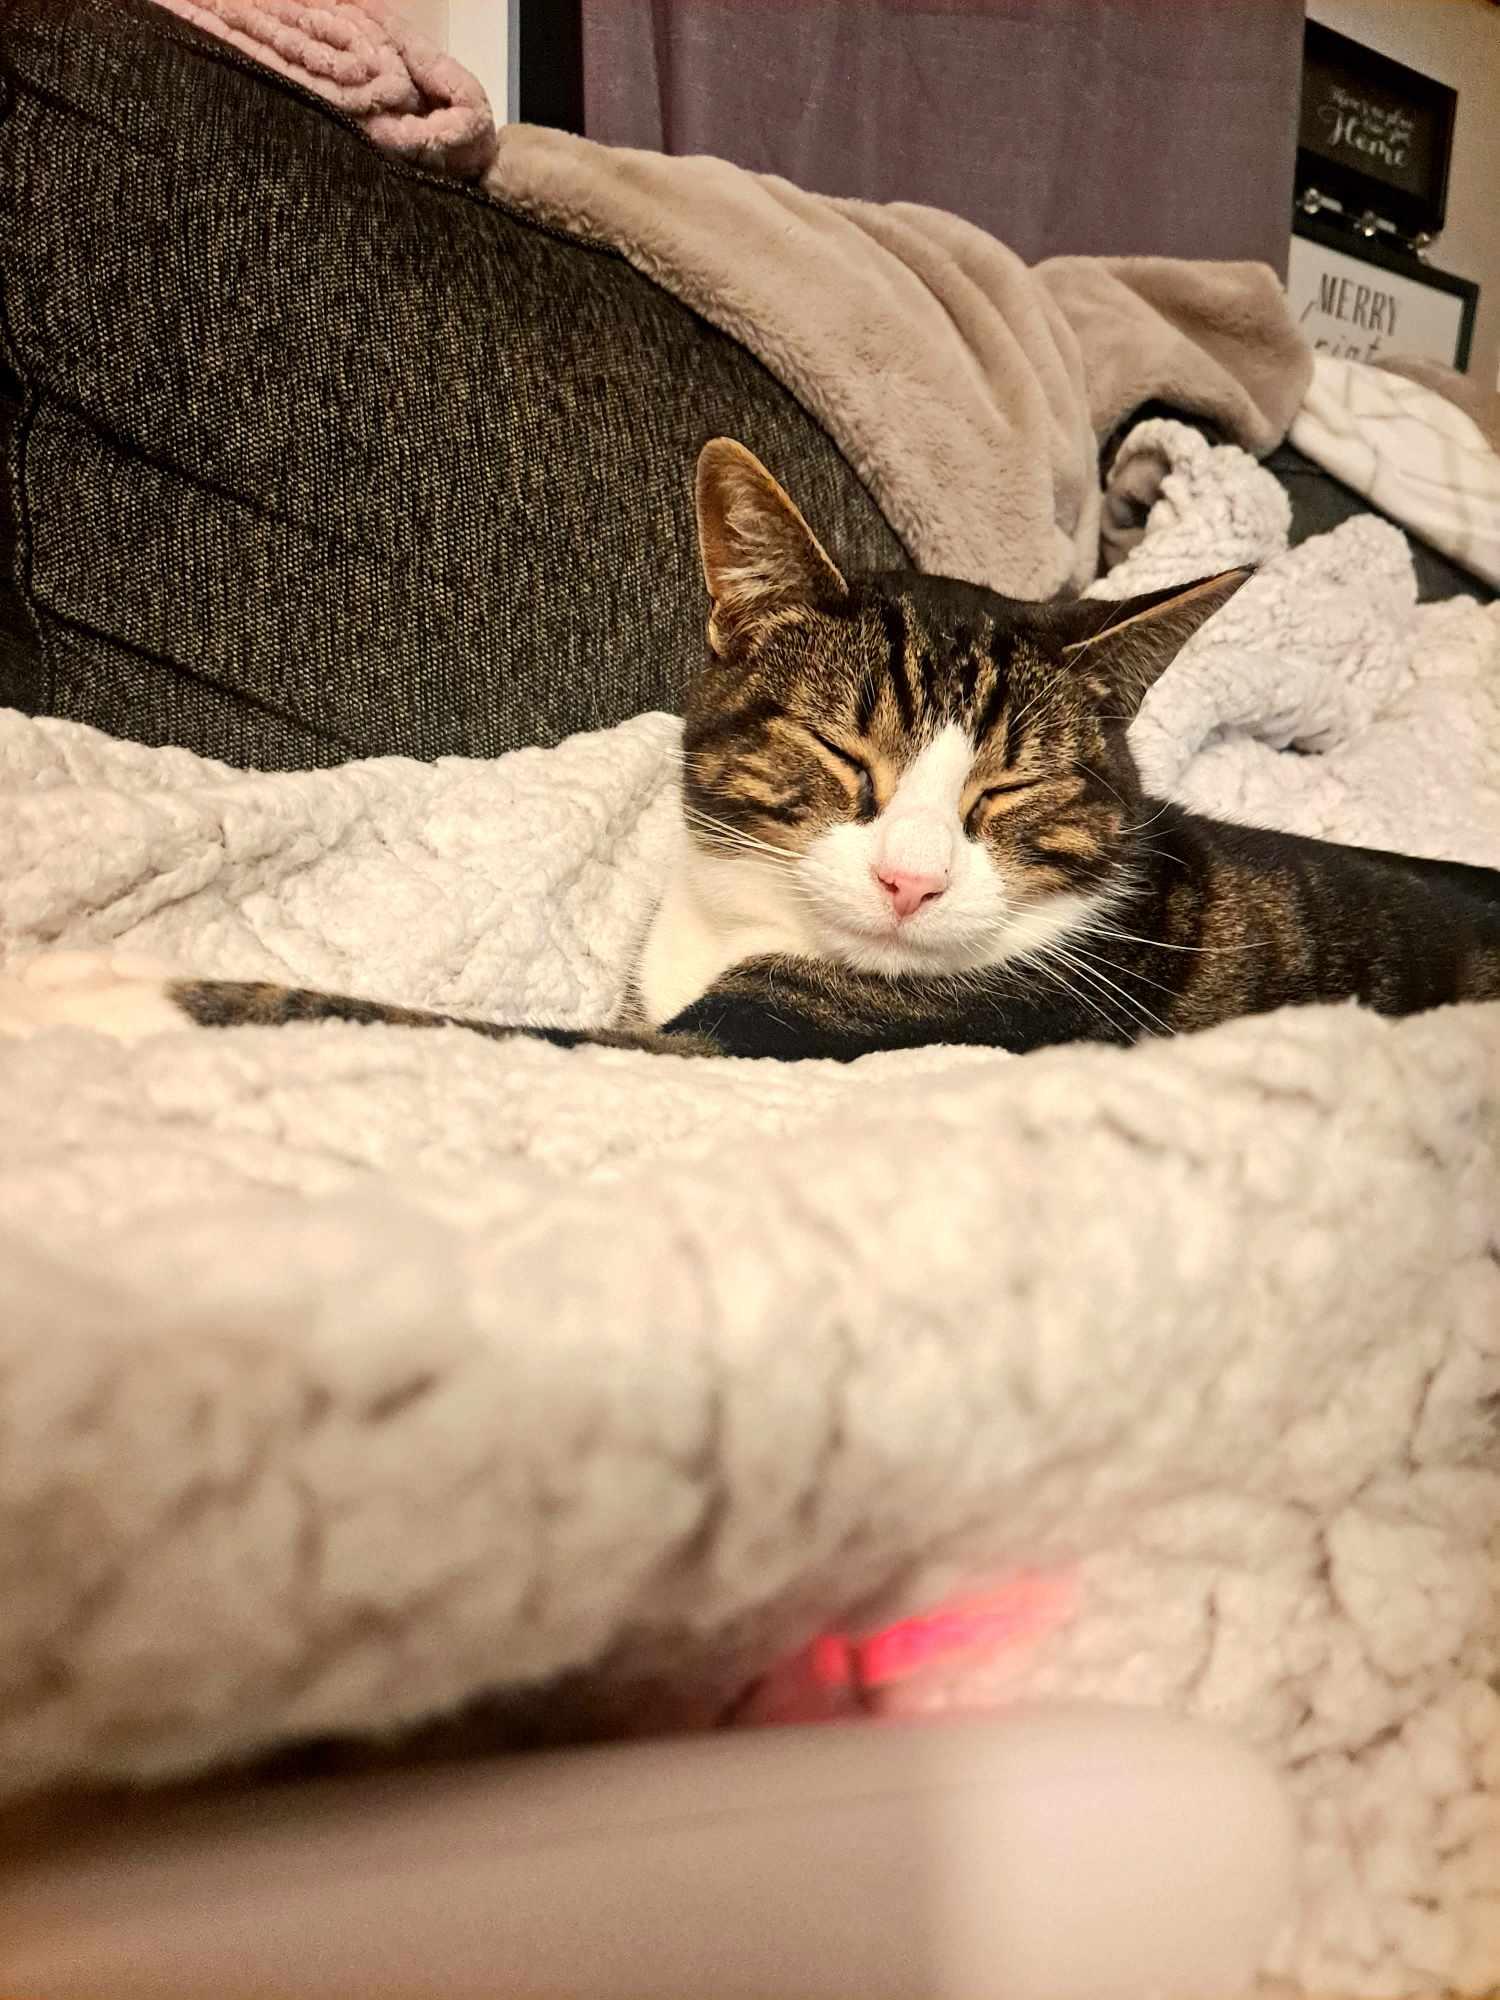 She loves her heated blanket